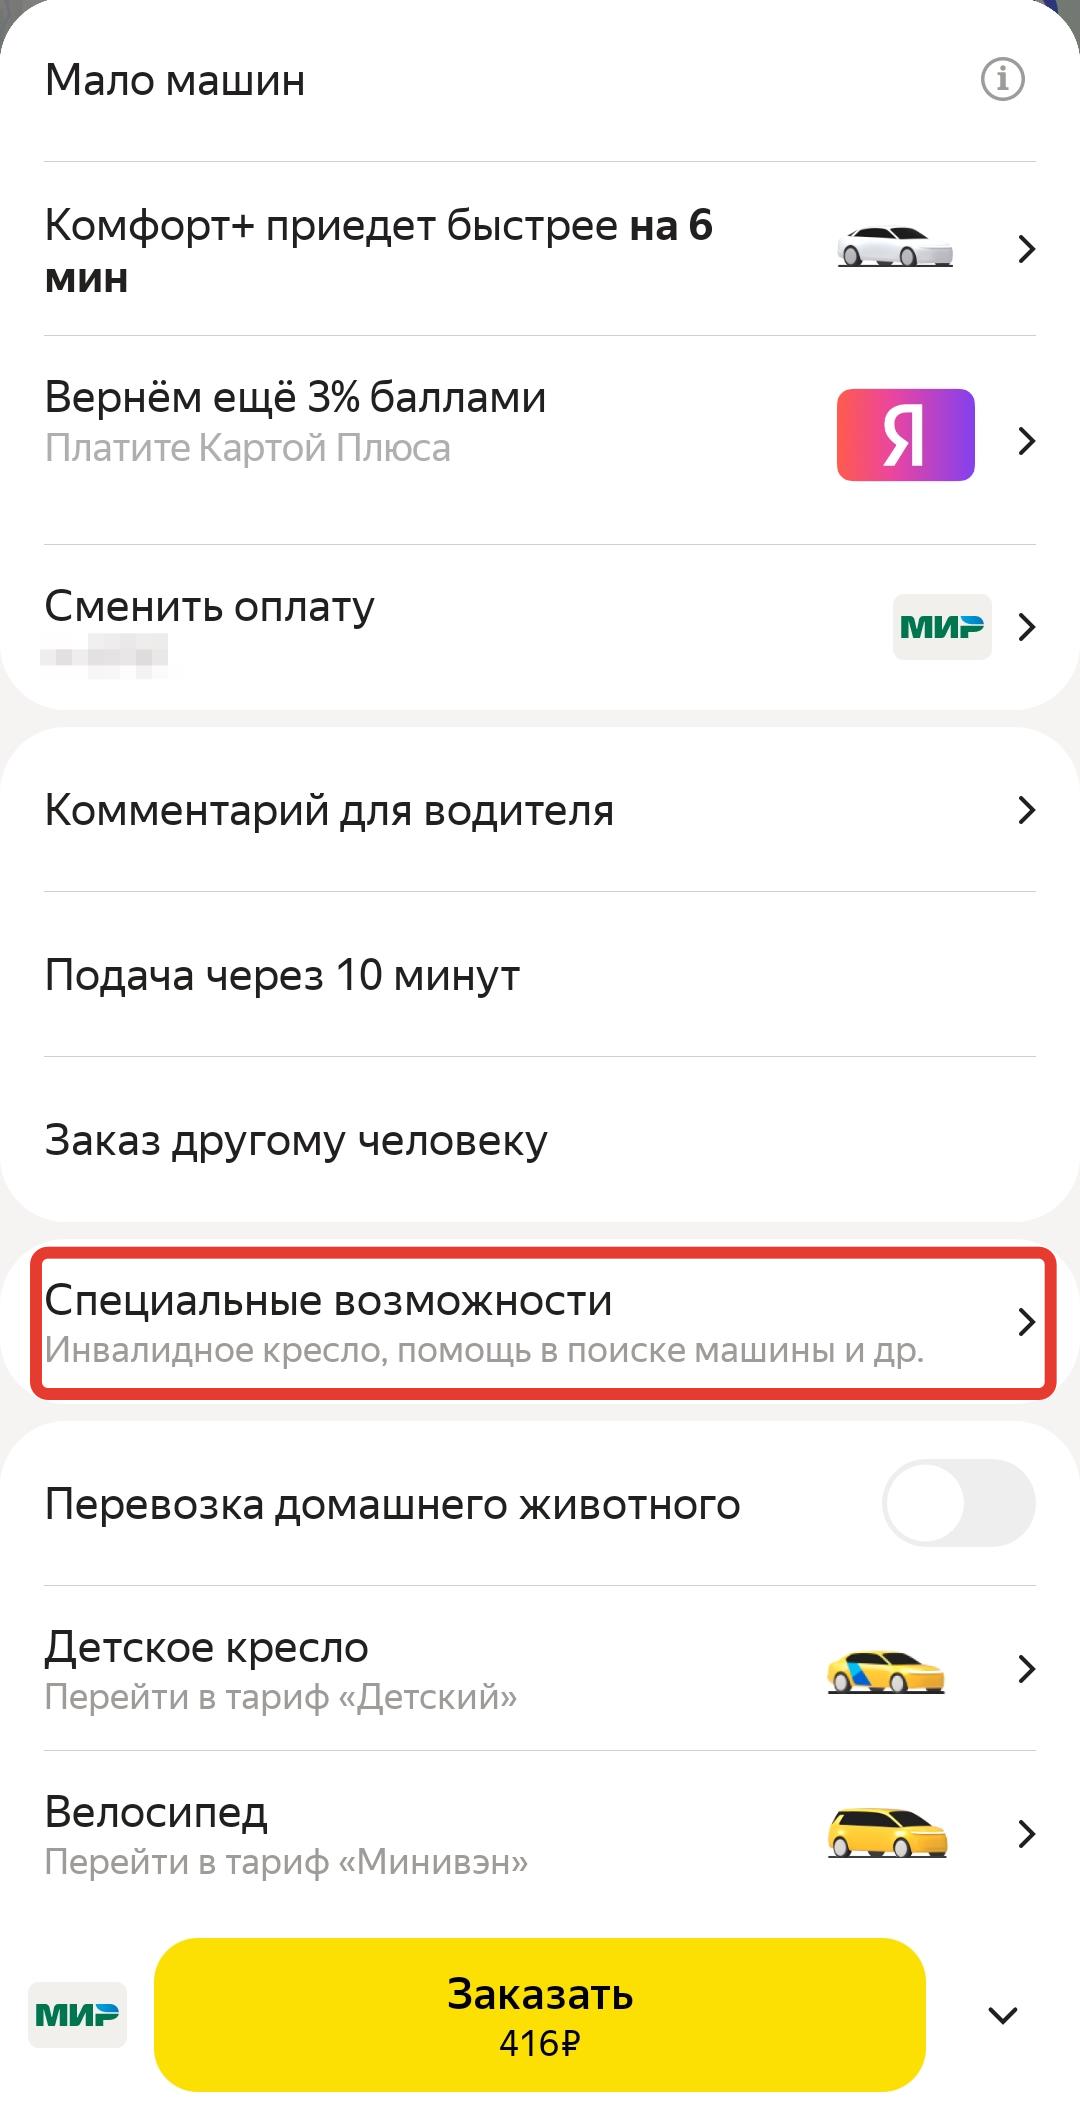 Скриншот приложения "Яндекс Такси" с выбором специальных возможностей